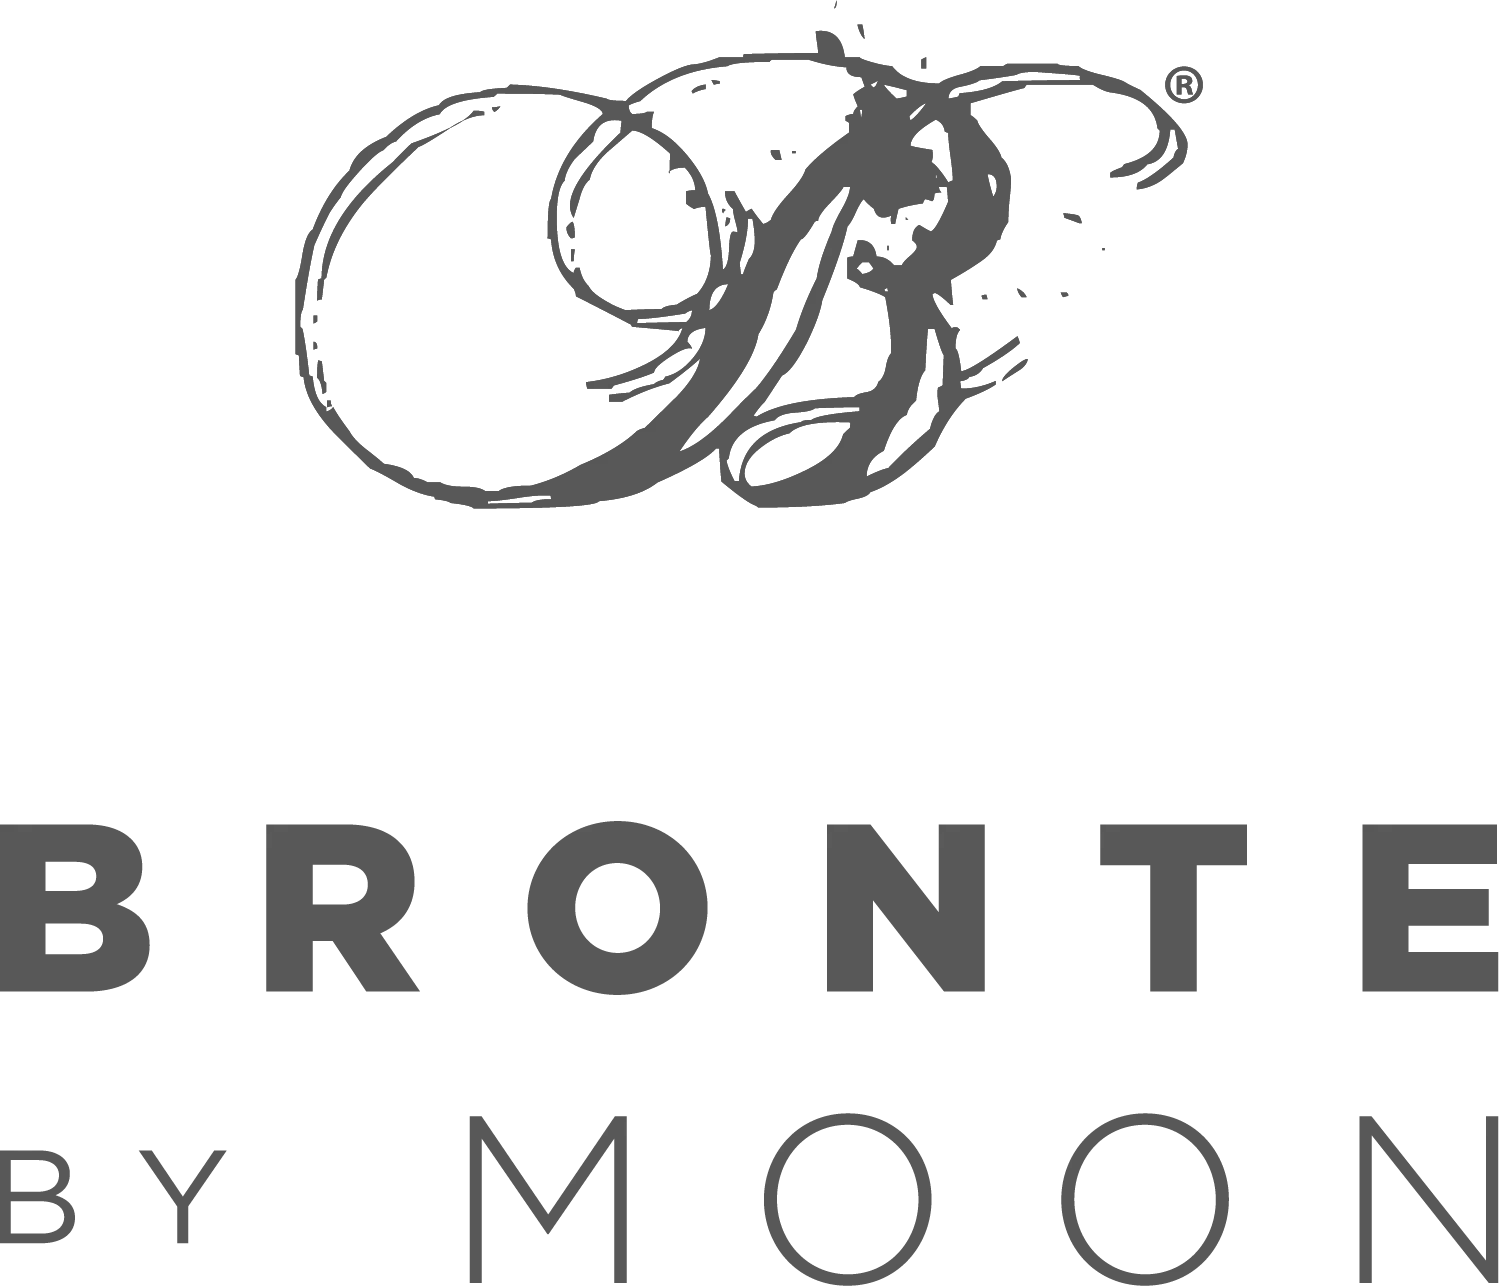 brontebymoon.co.uk